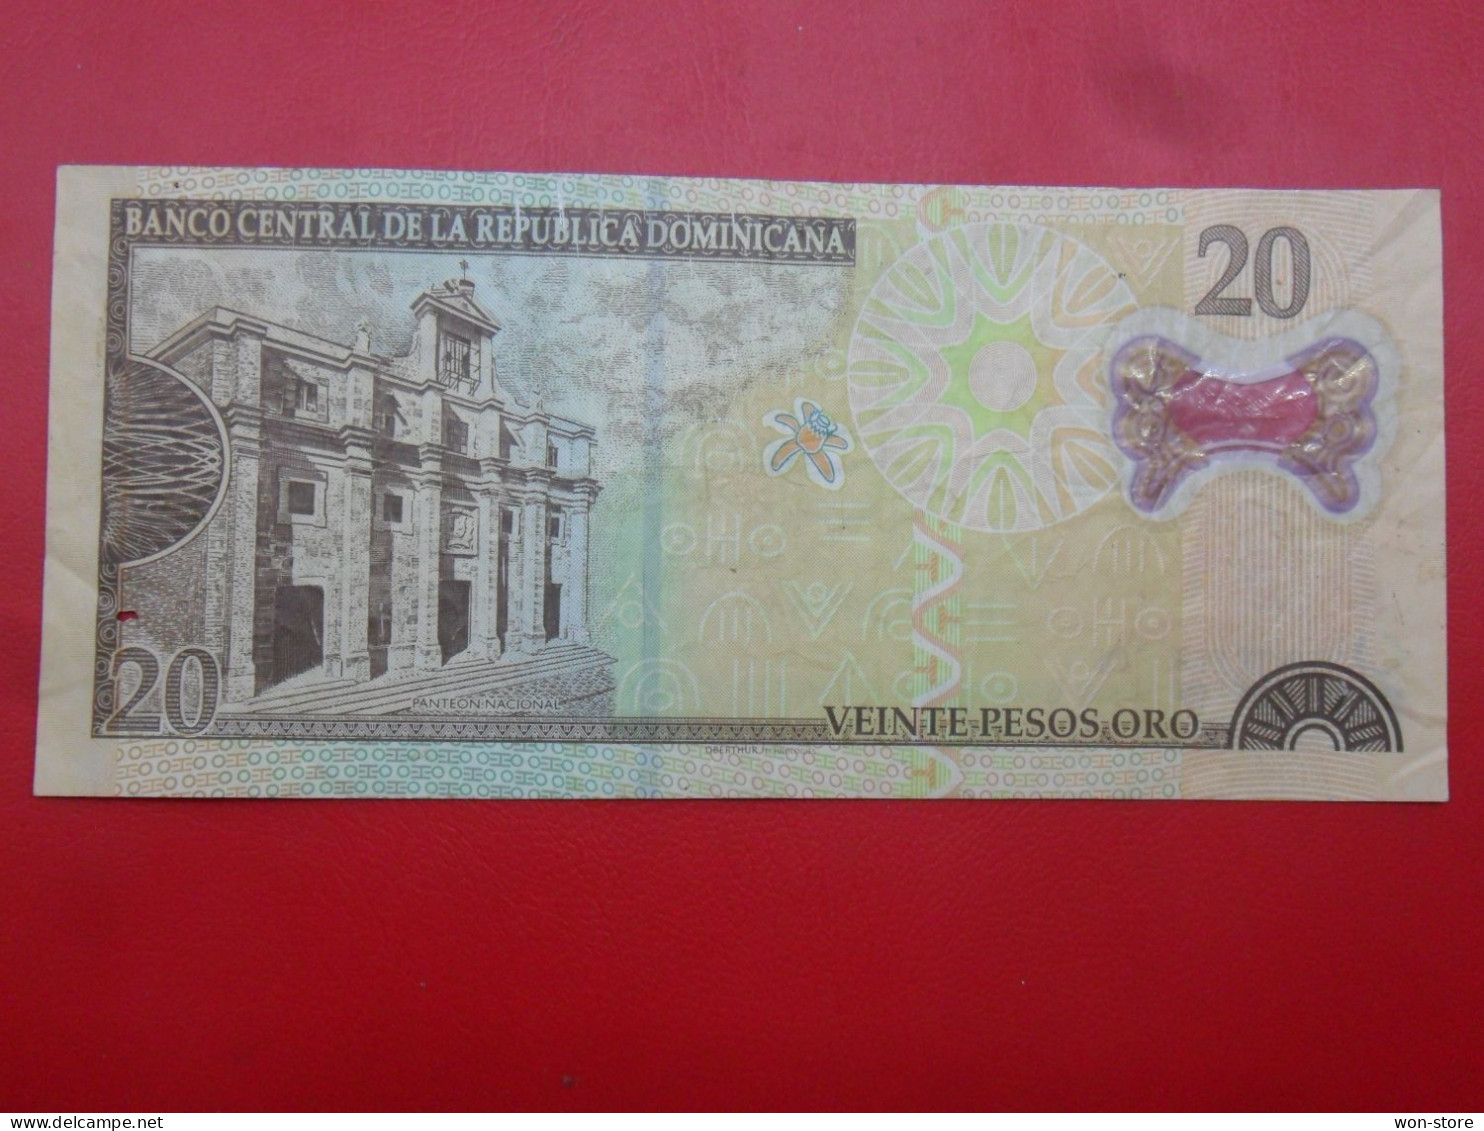 6789,7564 - Dominican Republic 20 Pesos Oro 2009 - Repubblica Dominicana